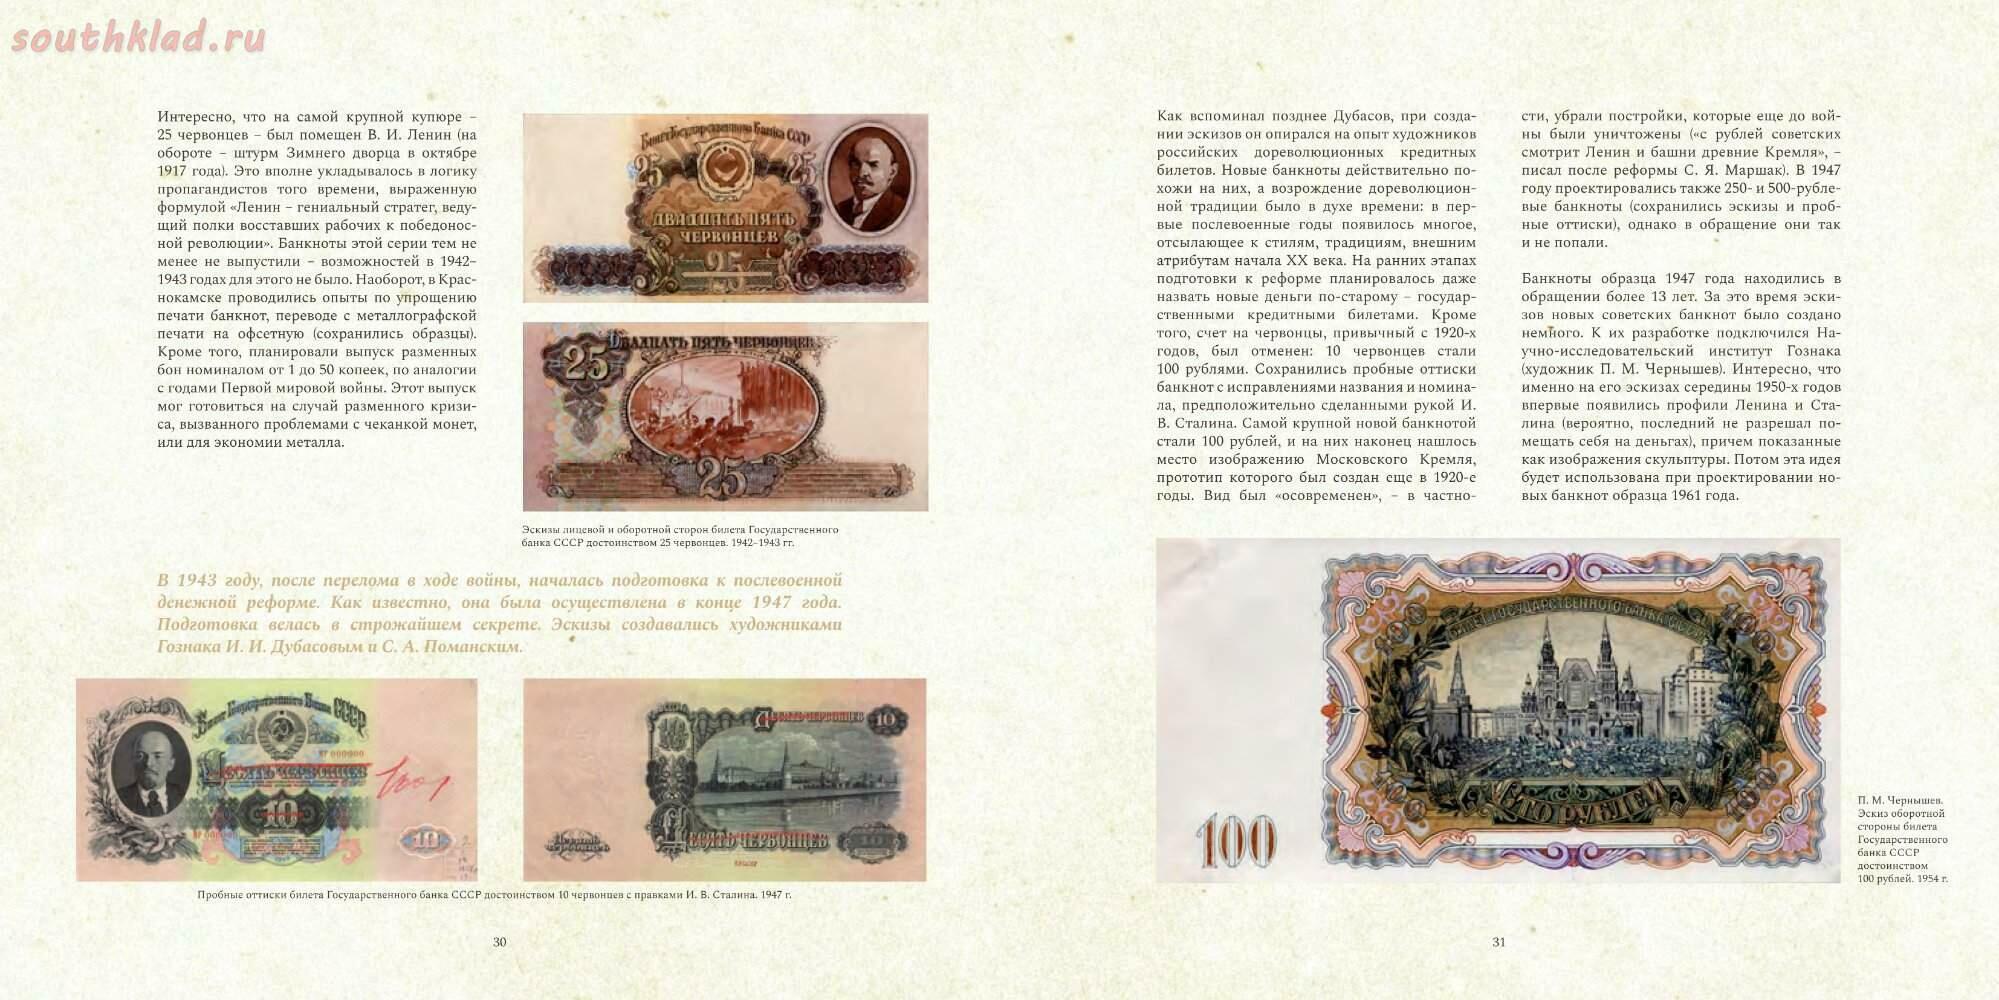 Иллюстрирована 34 рисунками словами. Плакаты по определению подлинности банкнот. Распечатка старых бумажных денег с 2 сторон.